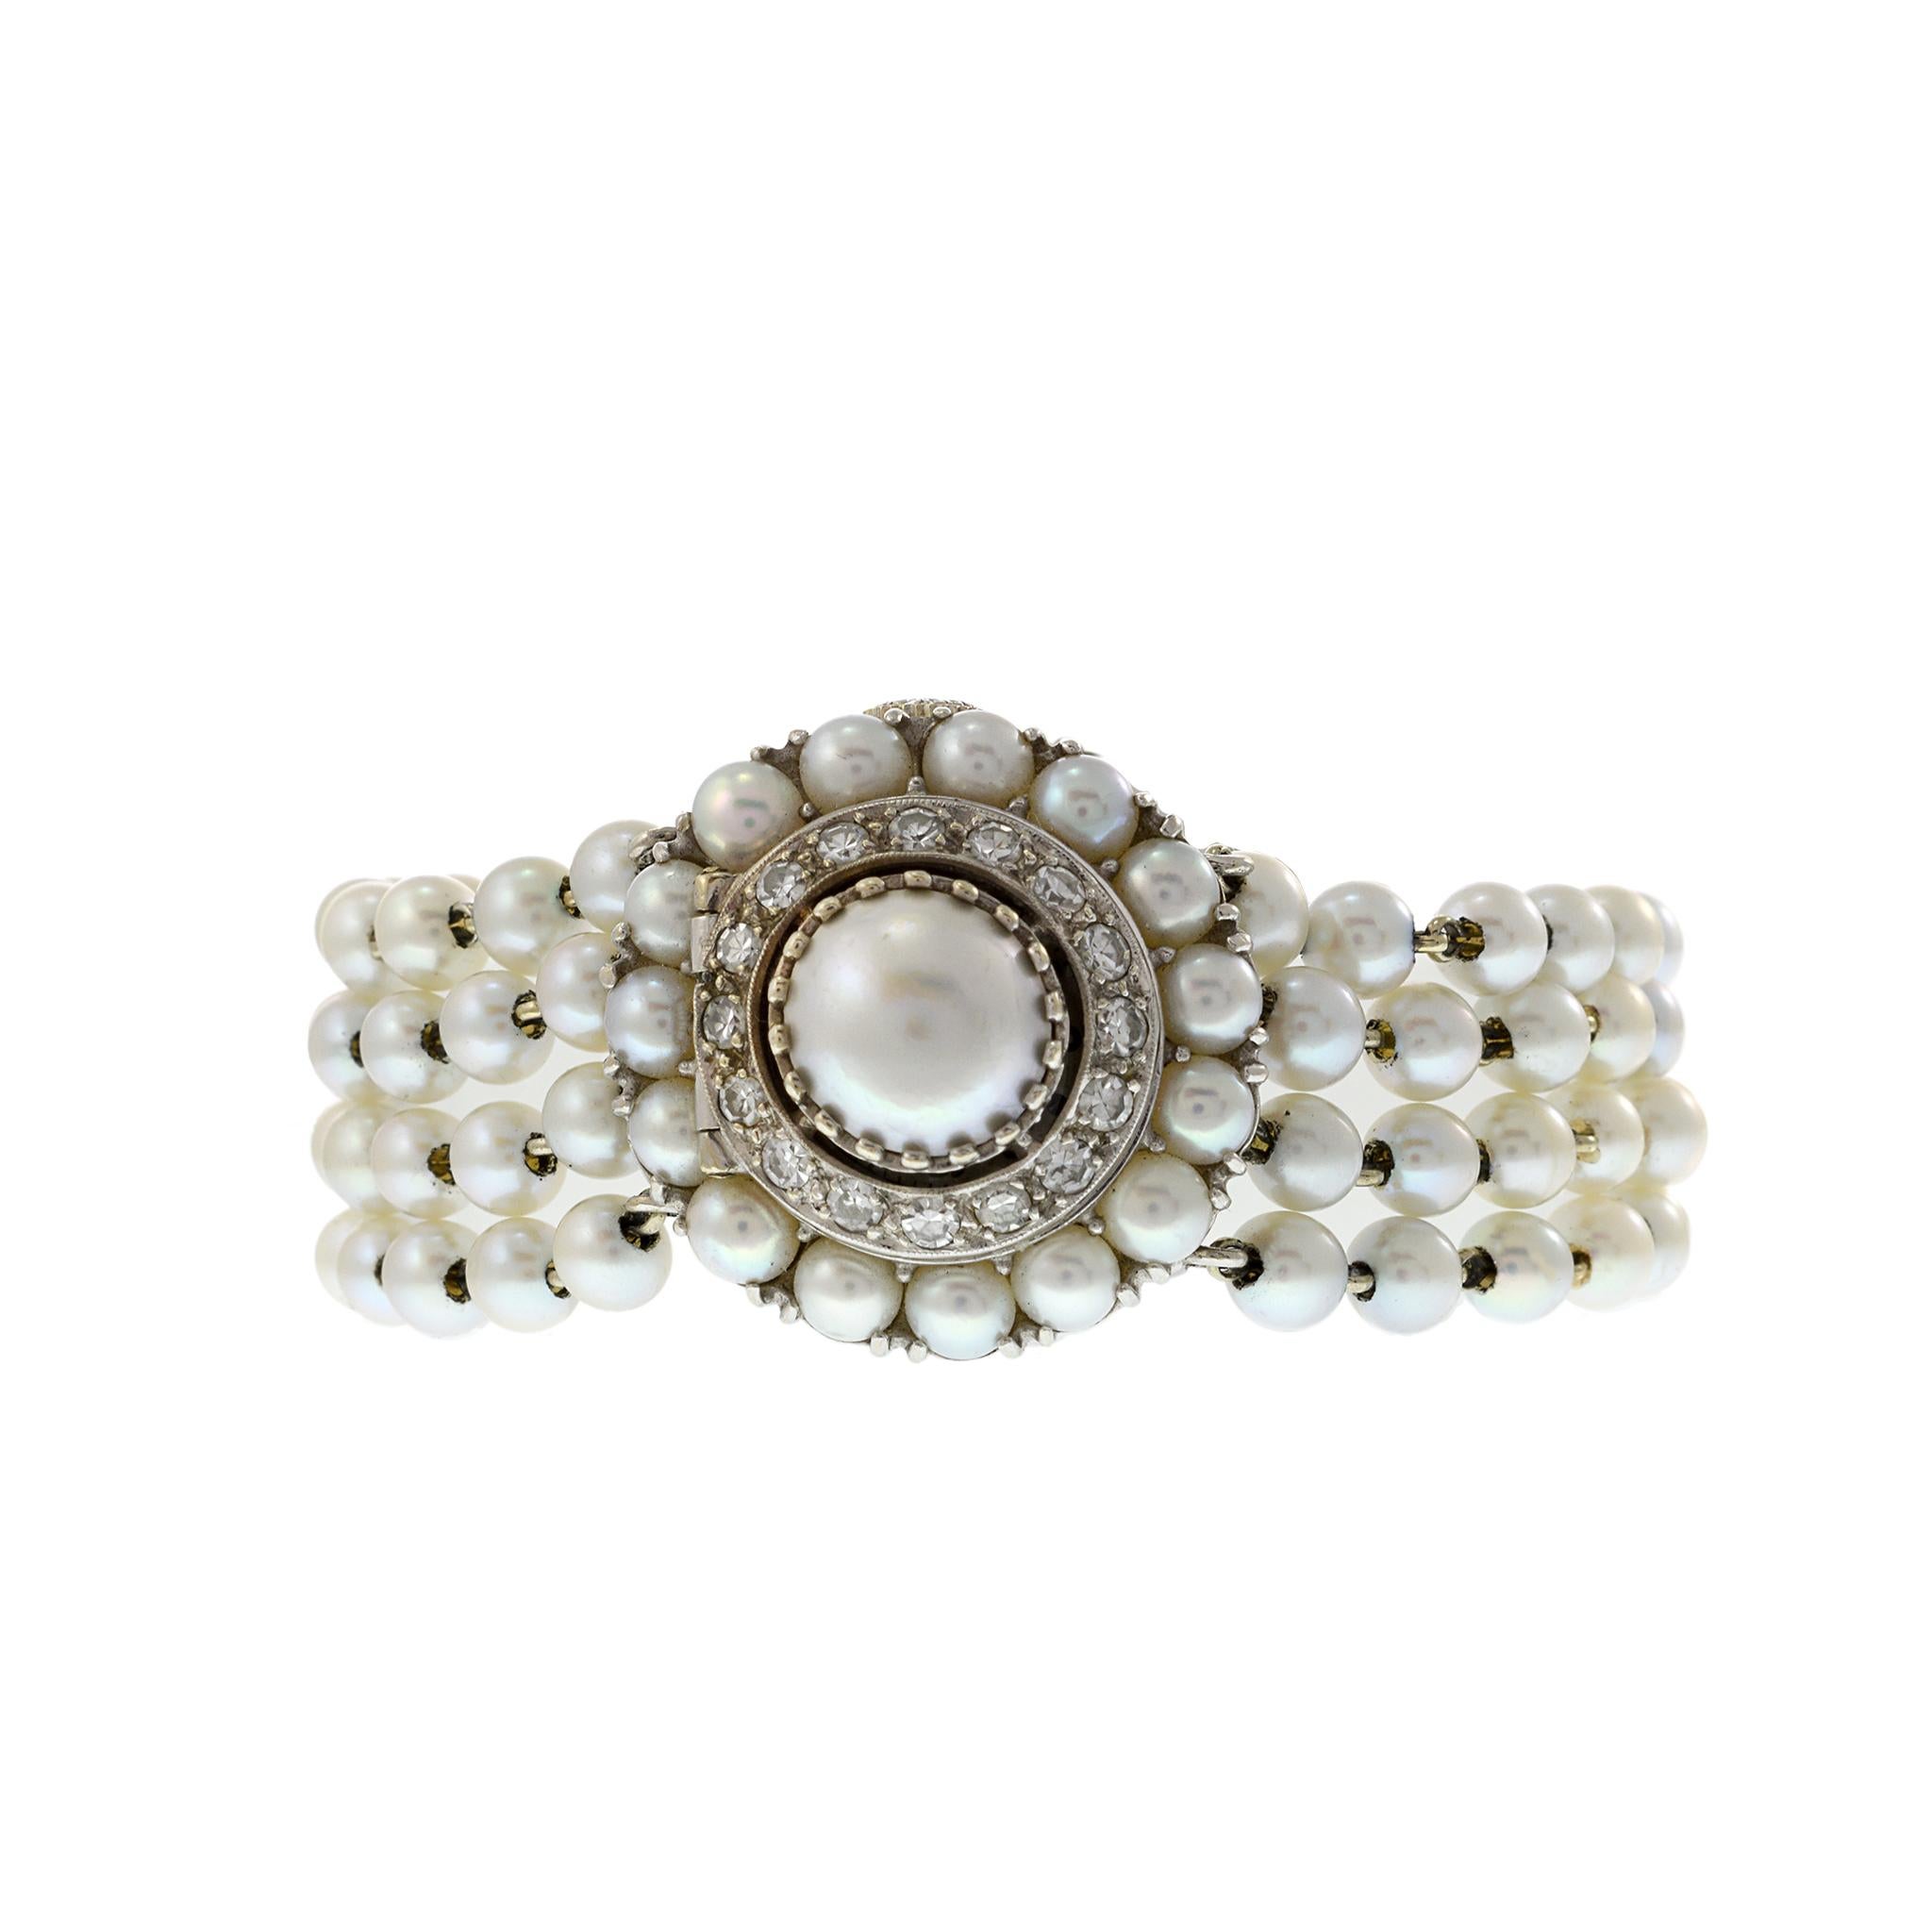 Il s'agit d'une montre de cocktail Lucien Piccard des années 1950 en or blanc 14 carats. Le boîtier est décoré de perles d'Akoya et de diamants. Les mêmes perles sont enfilées pour créer le bracelet avec de l'or blanc 14K. La montre est élégamment